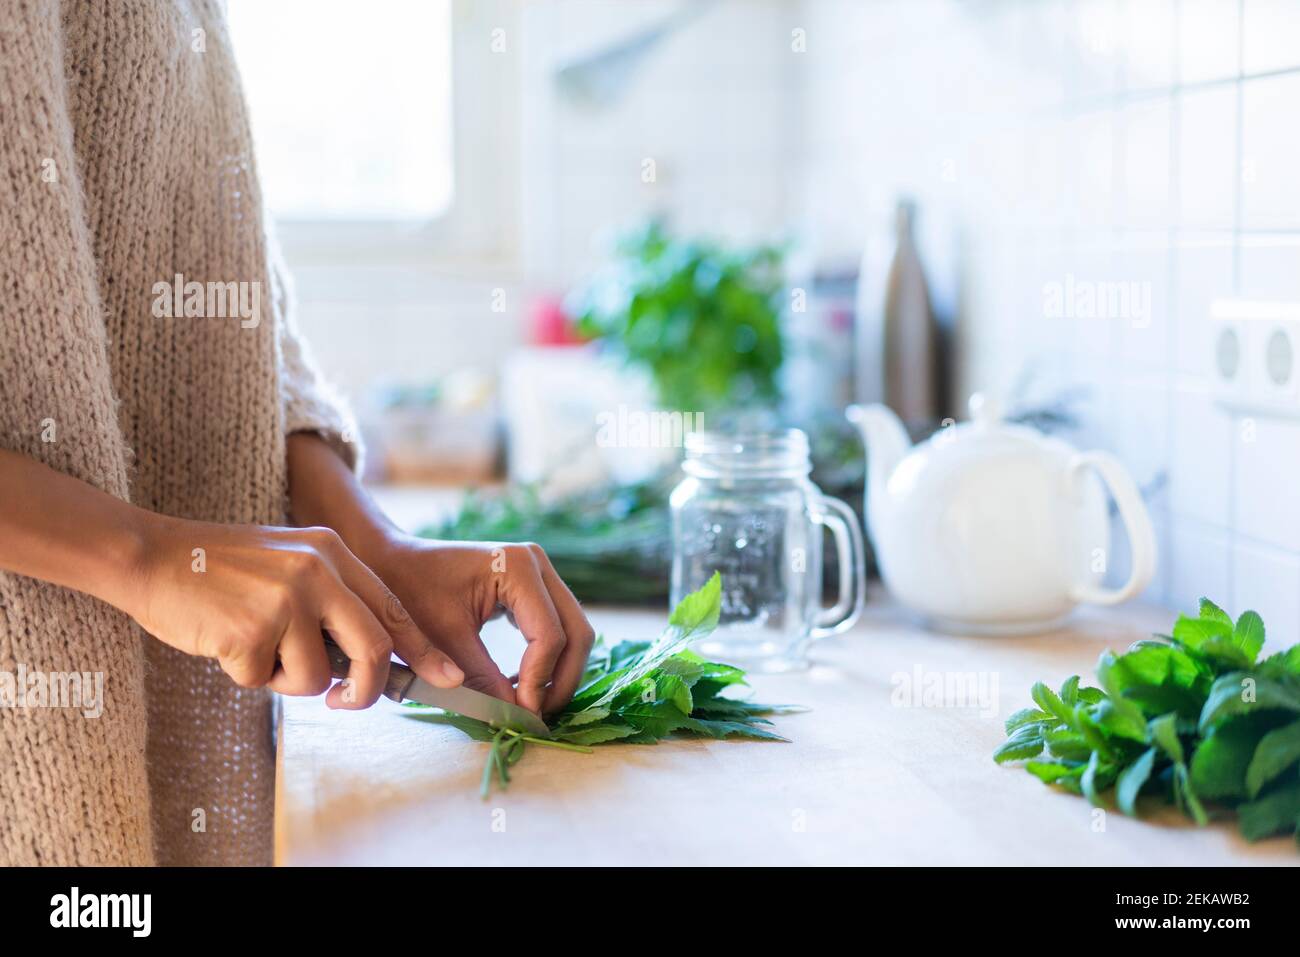 La femme coupe des tisanes à la main pour préparer le thé dans la cuisine Banque D'Images